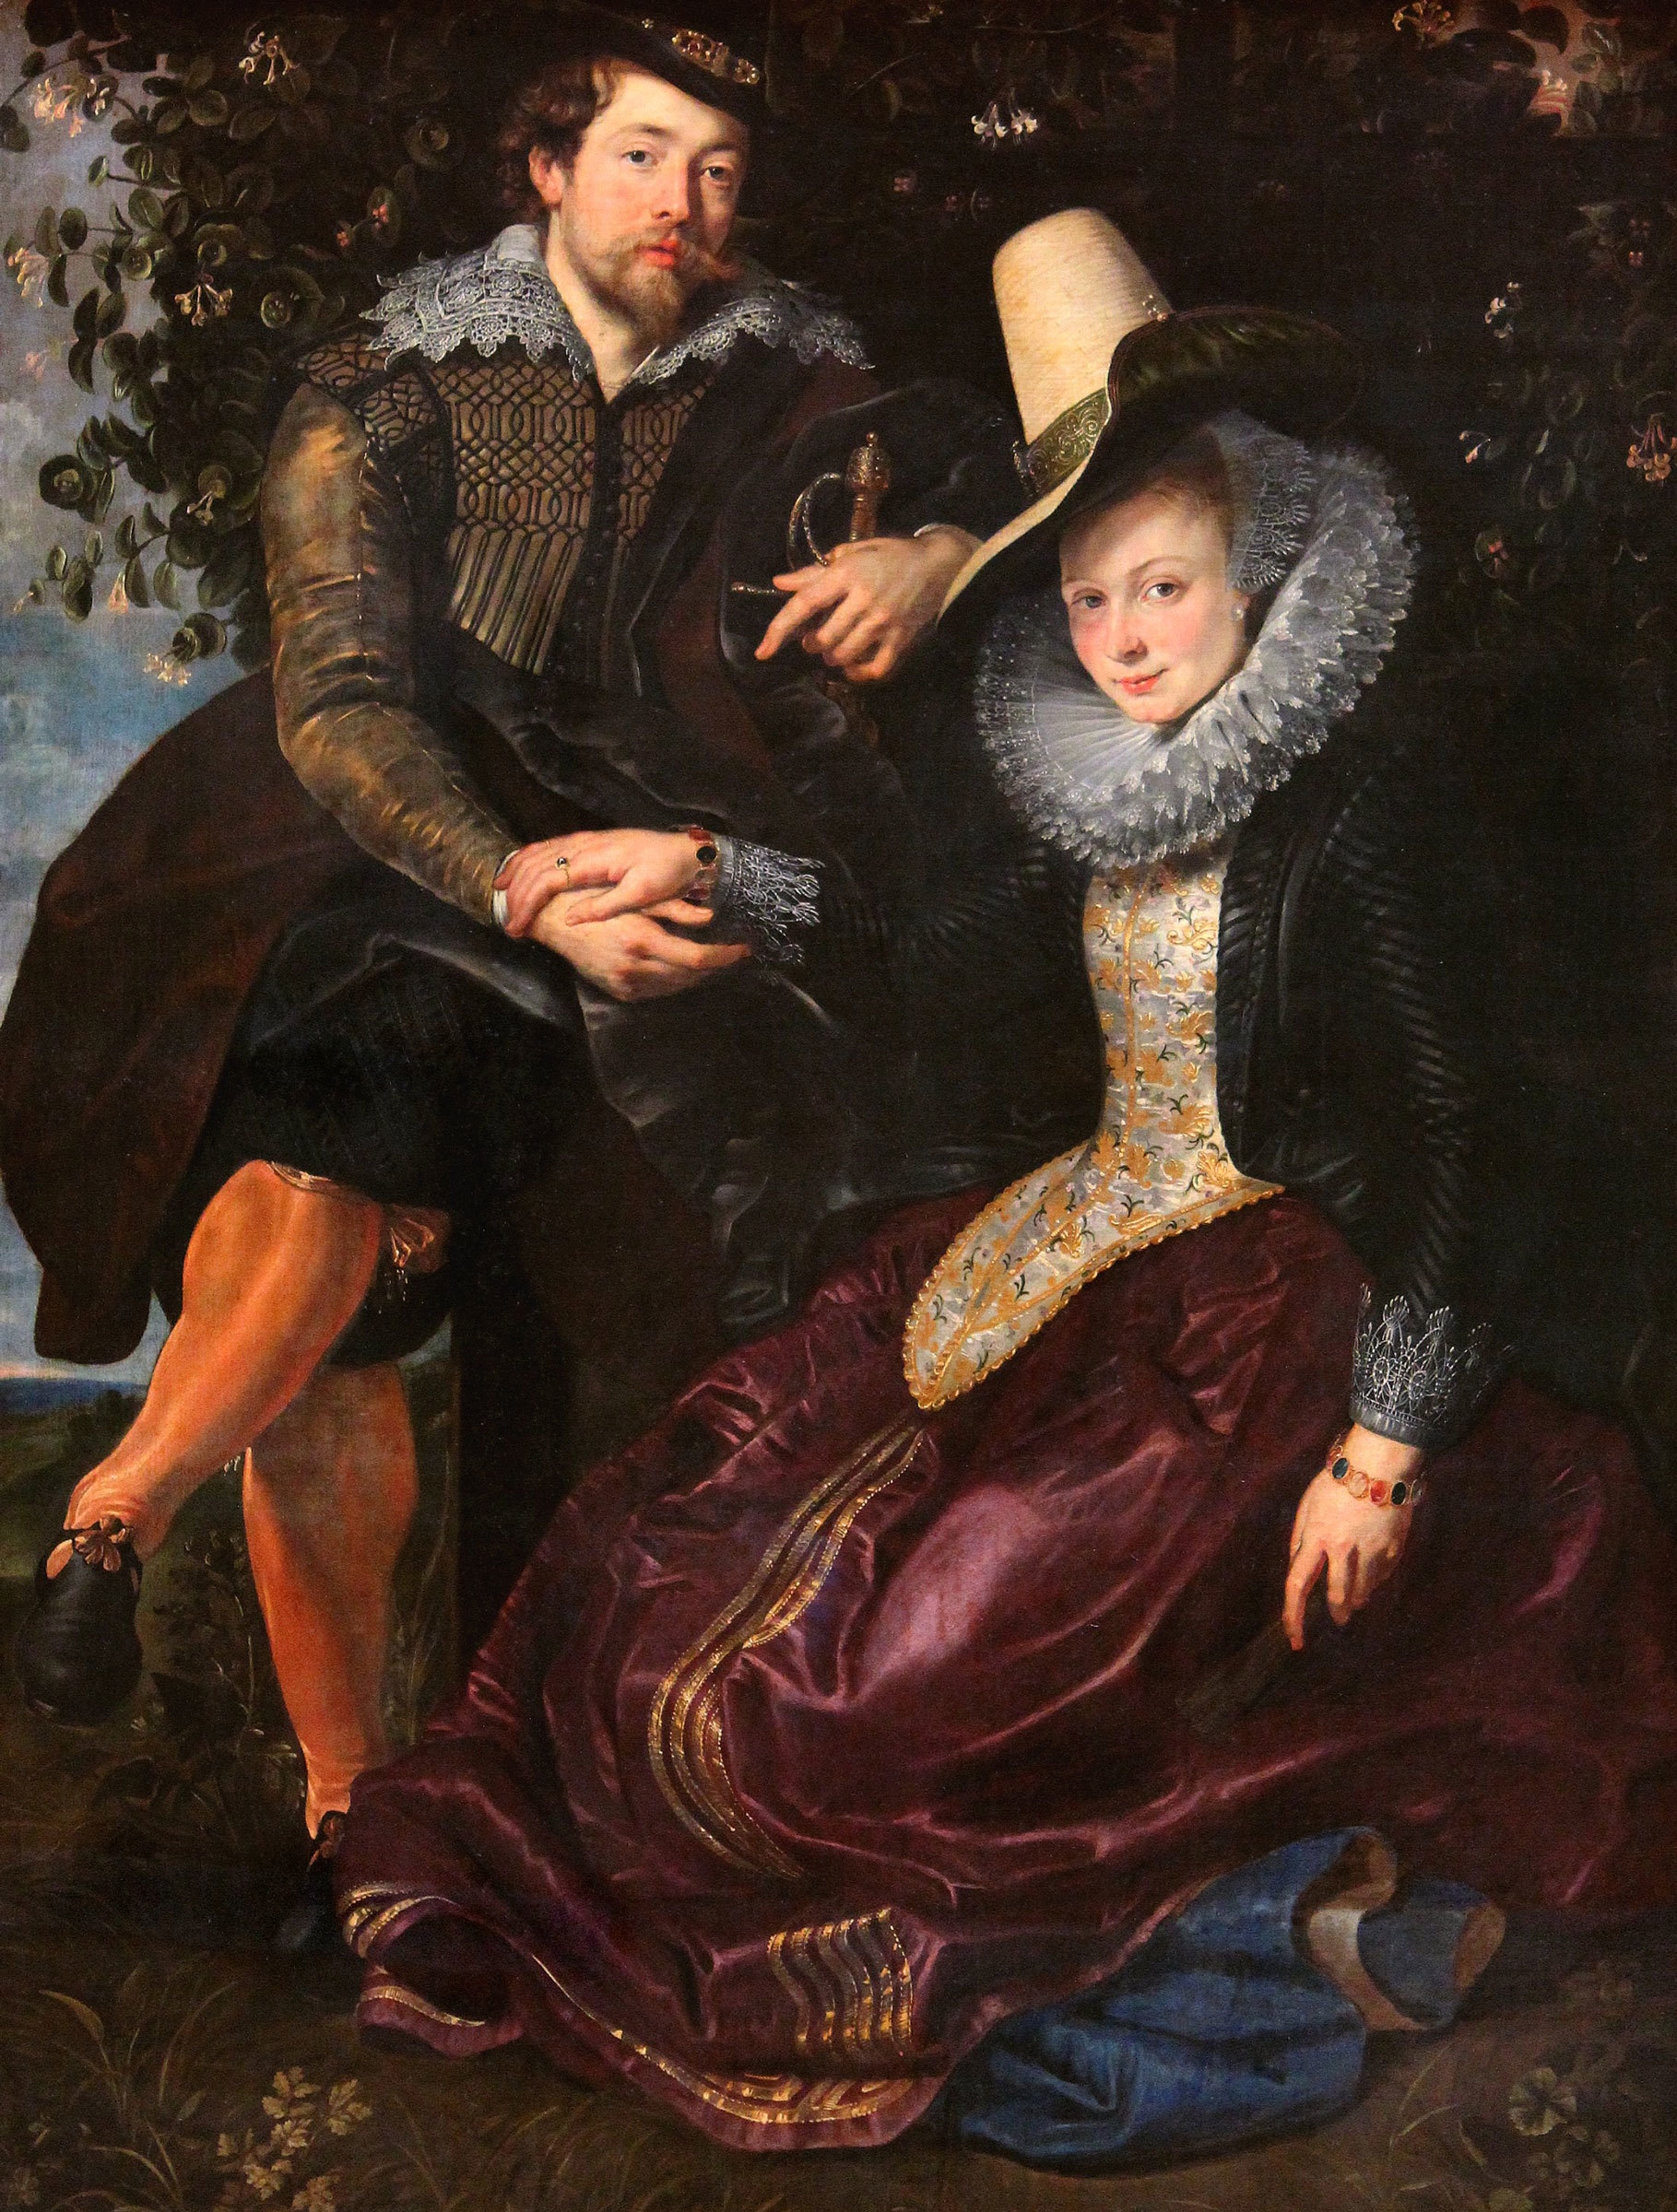 Peter Paul Rubens – Rubens und Isabella Brant, Bilderrahmen eiche